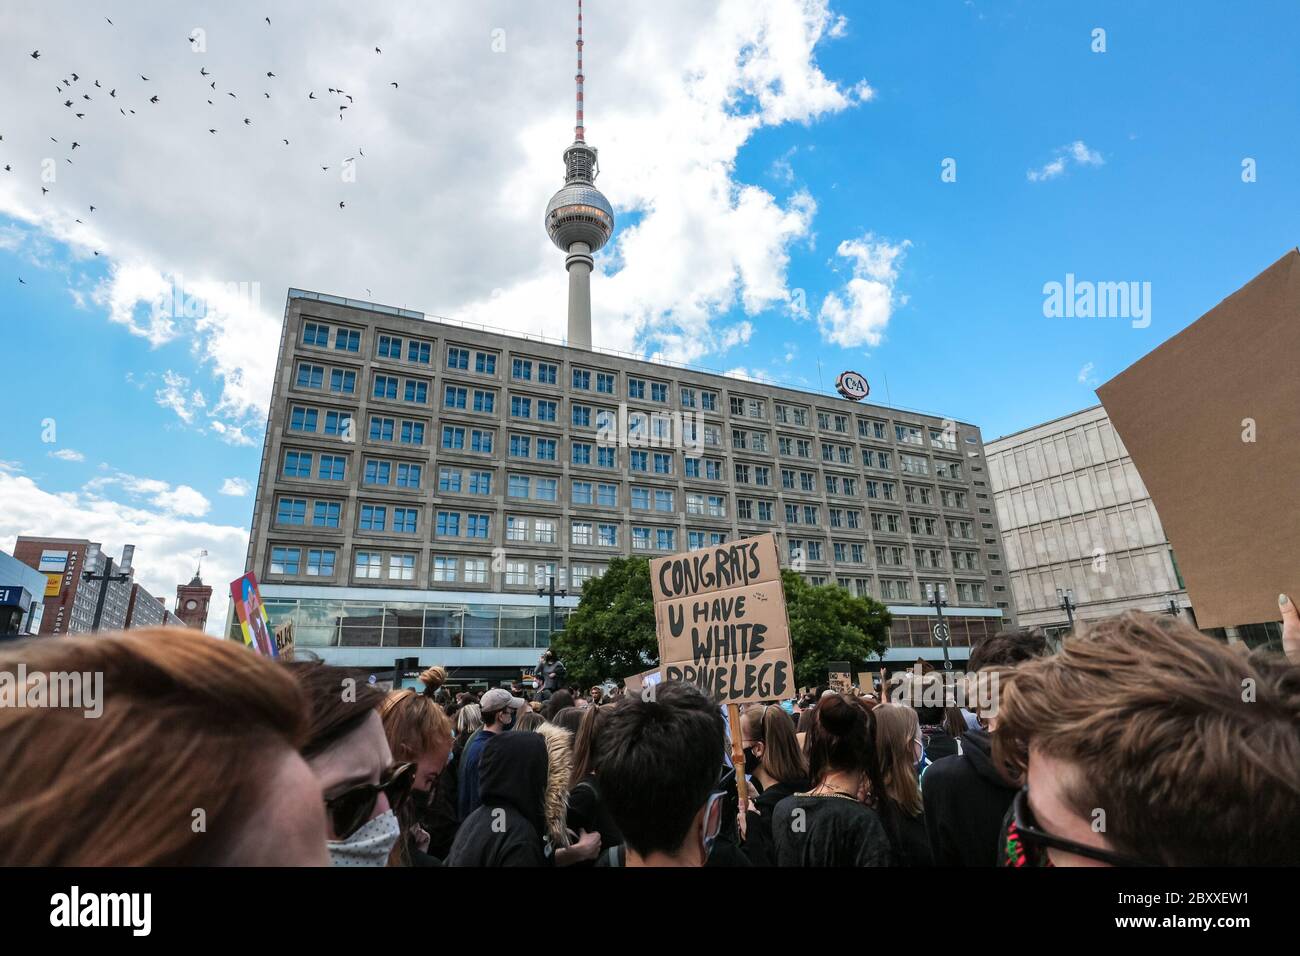 "Los congrats u tienen privilegio blanco" firman en una protesta de Black Lives en Alexanderplatz Berlín, Alemania, después de la muerte de George Floyd. Foto de stock